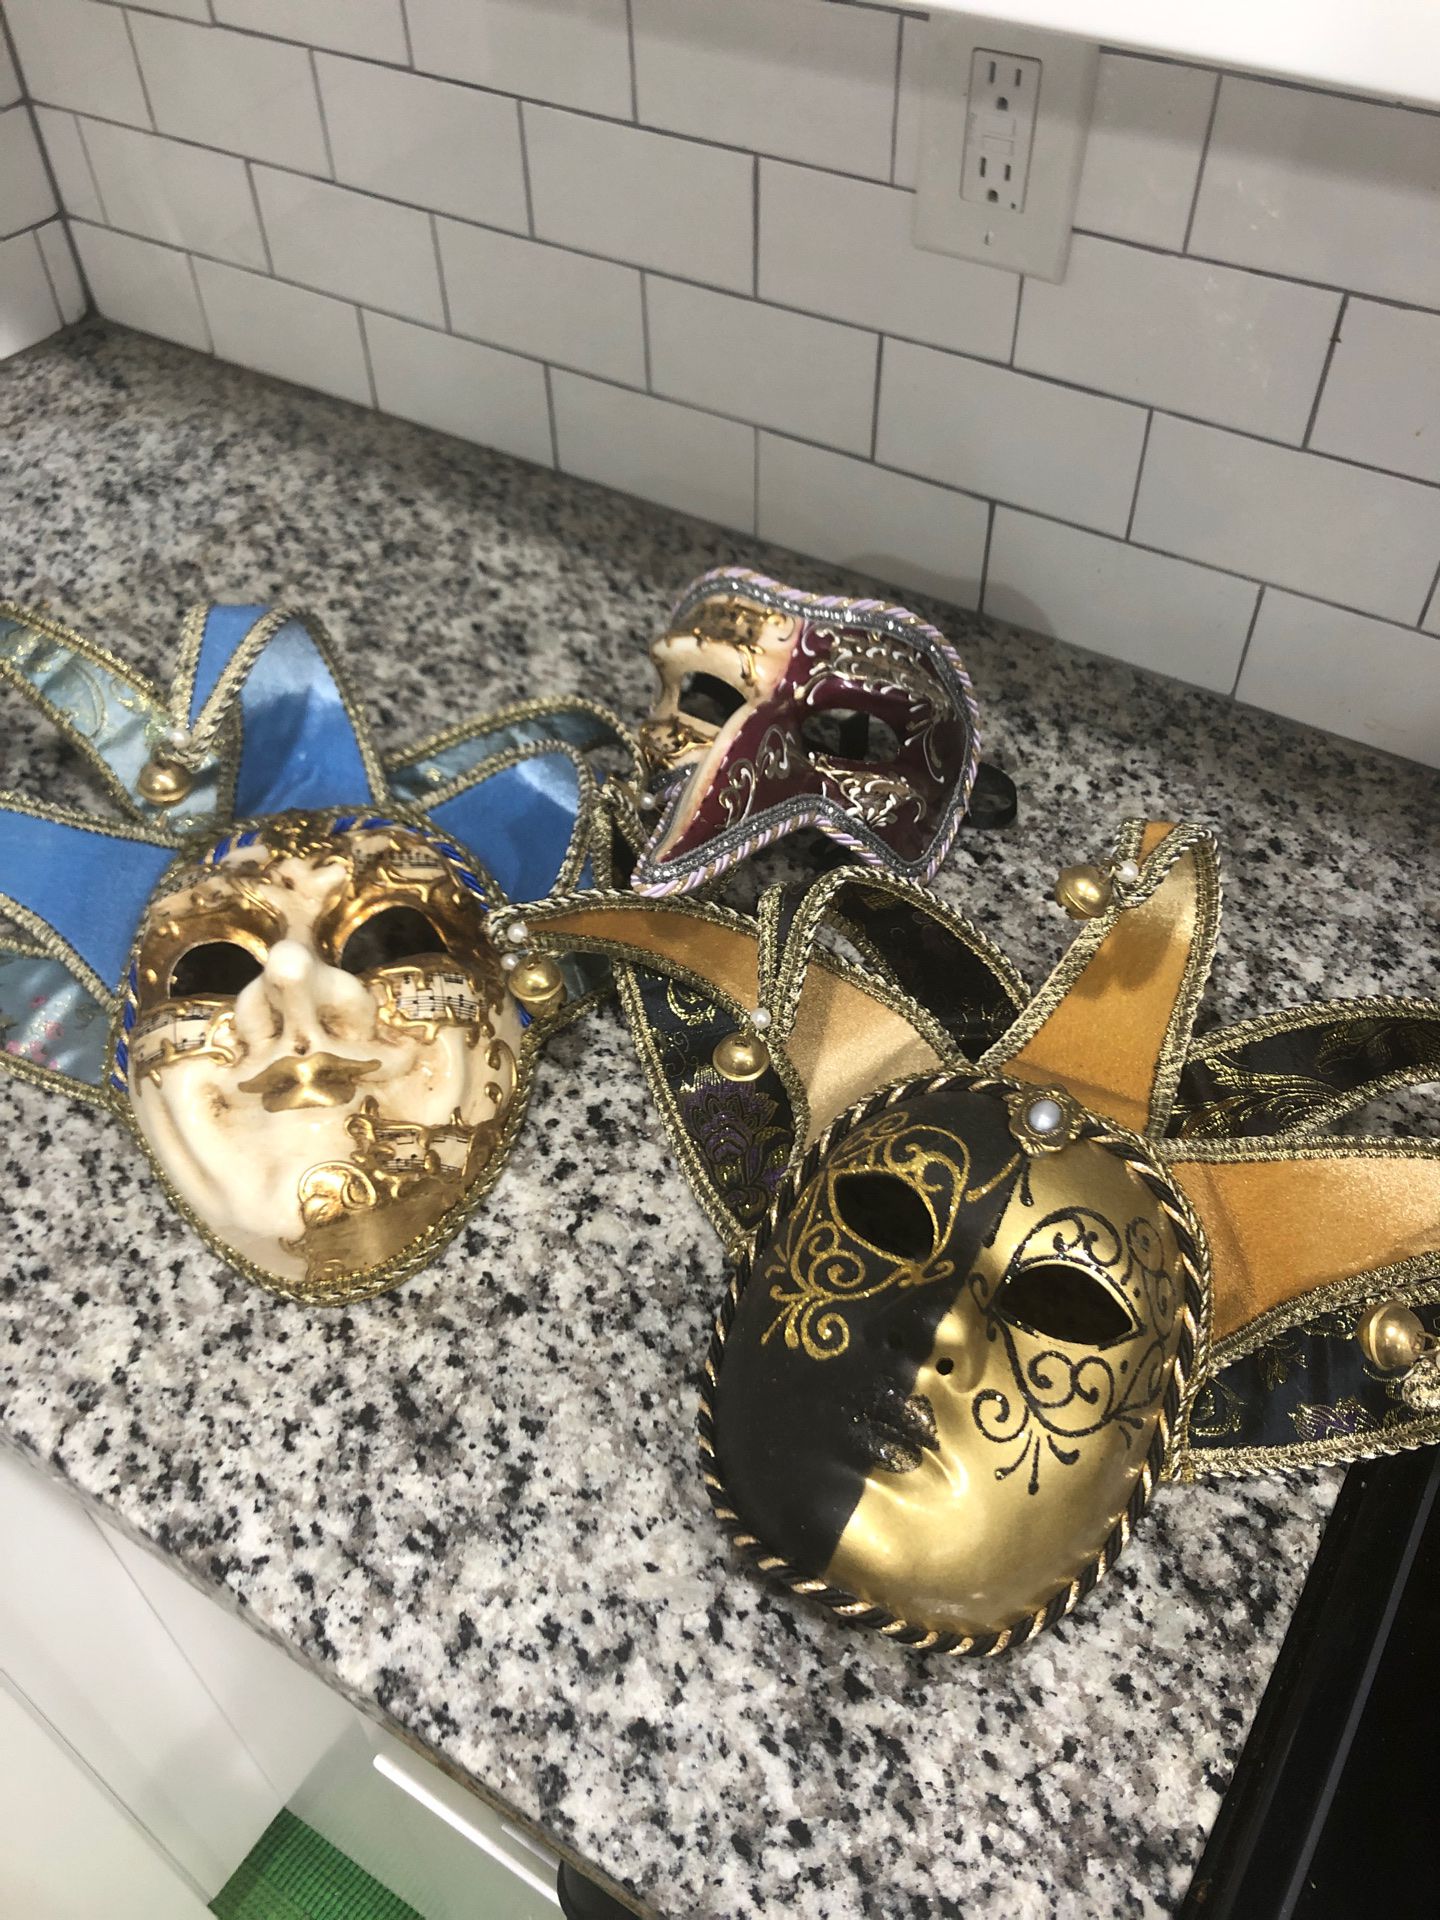 3 Venetian masks